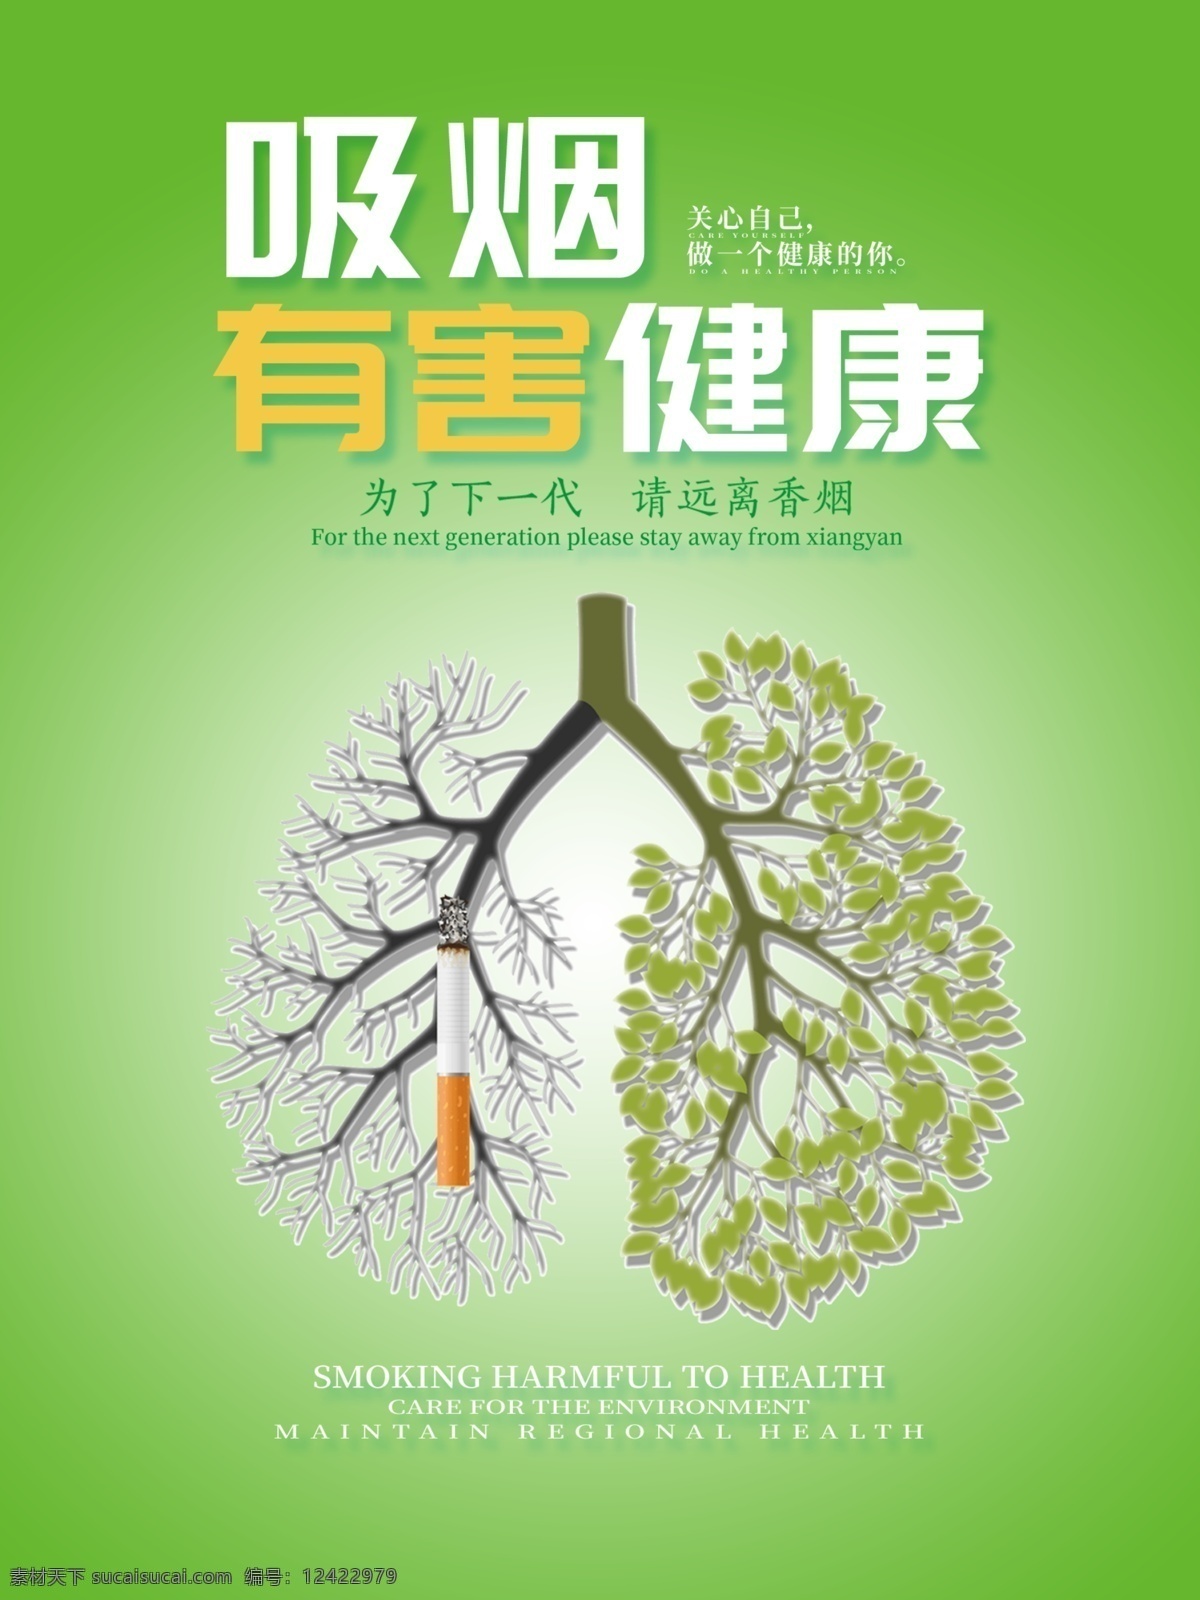 戒烟宣传海报 戒烟 公共场合 绿色环保 健康 海报